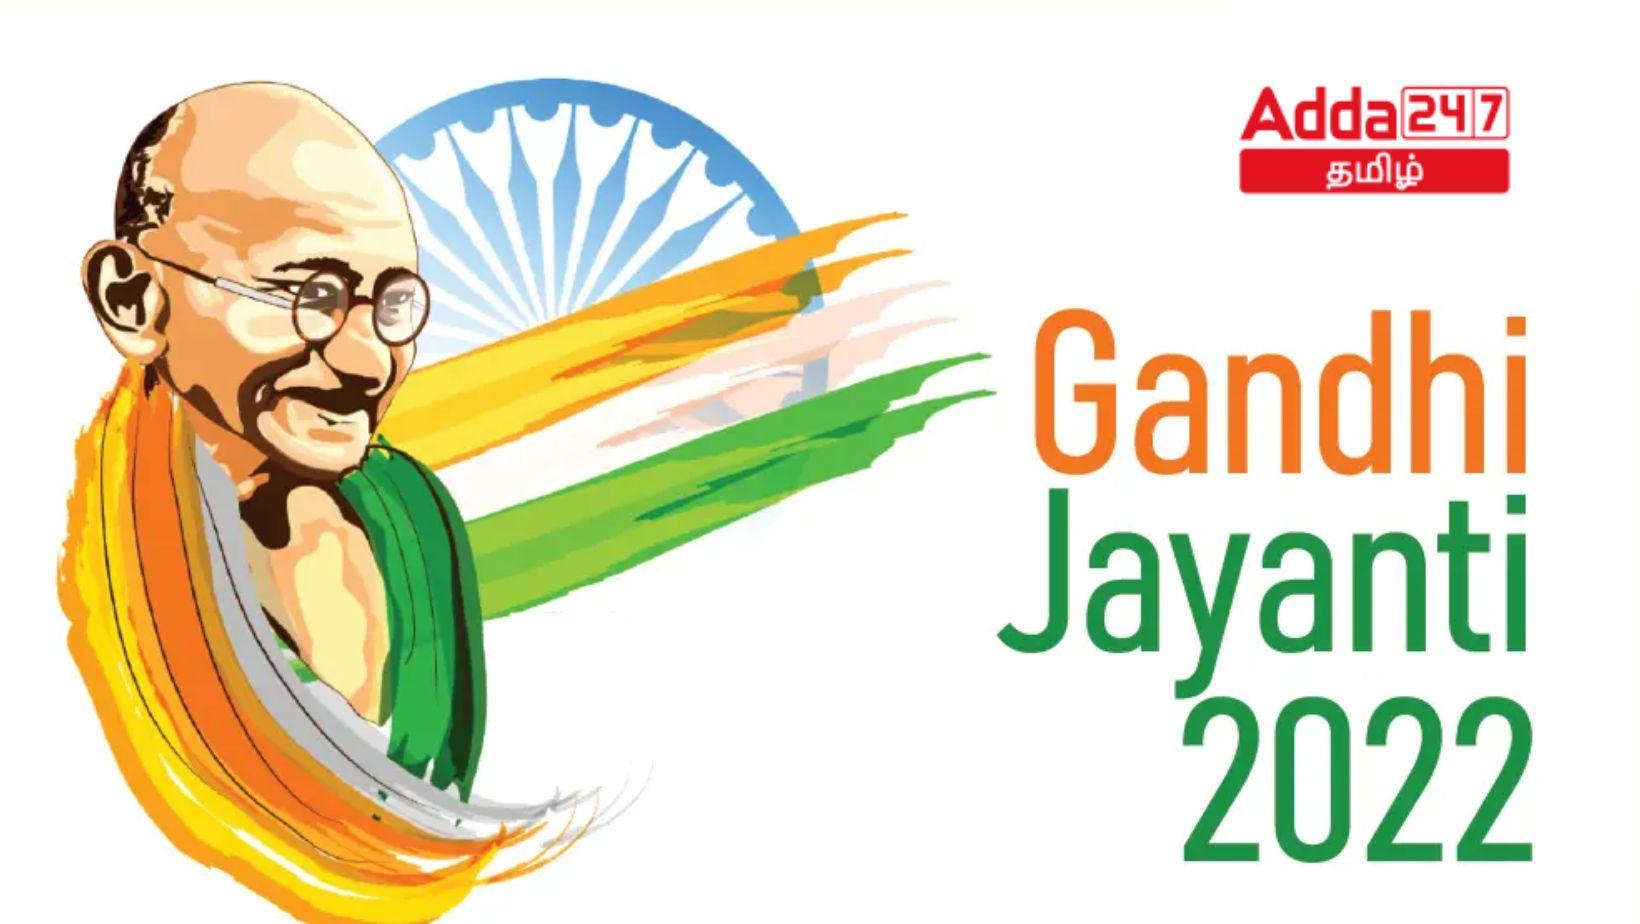 Happy Gandhi Jayanti | காந்தி ஜெயந்தி நல்வாழ்த்துக்கள்_20.1